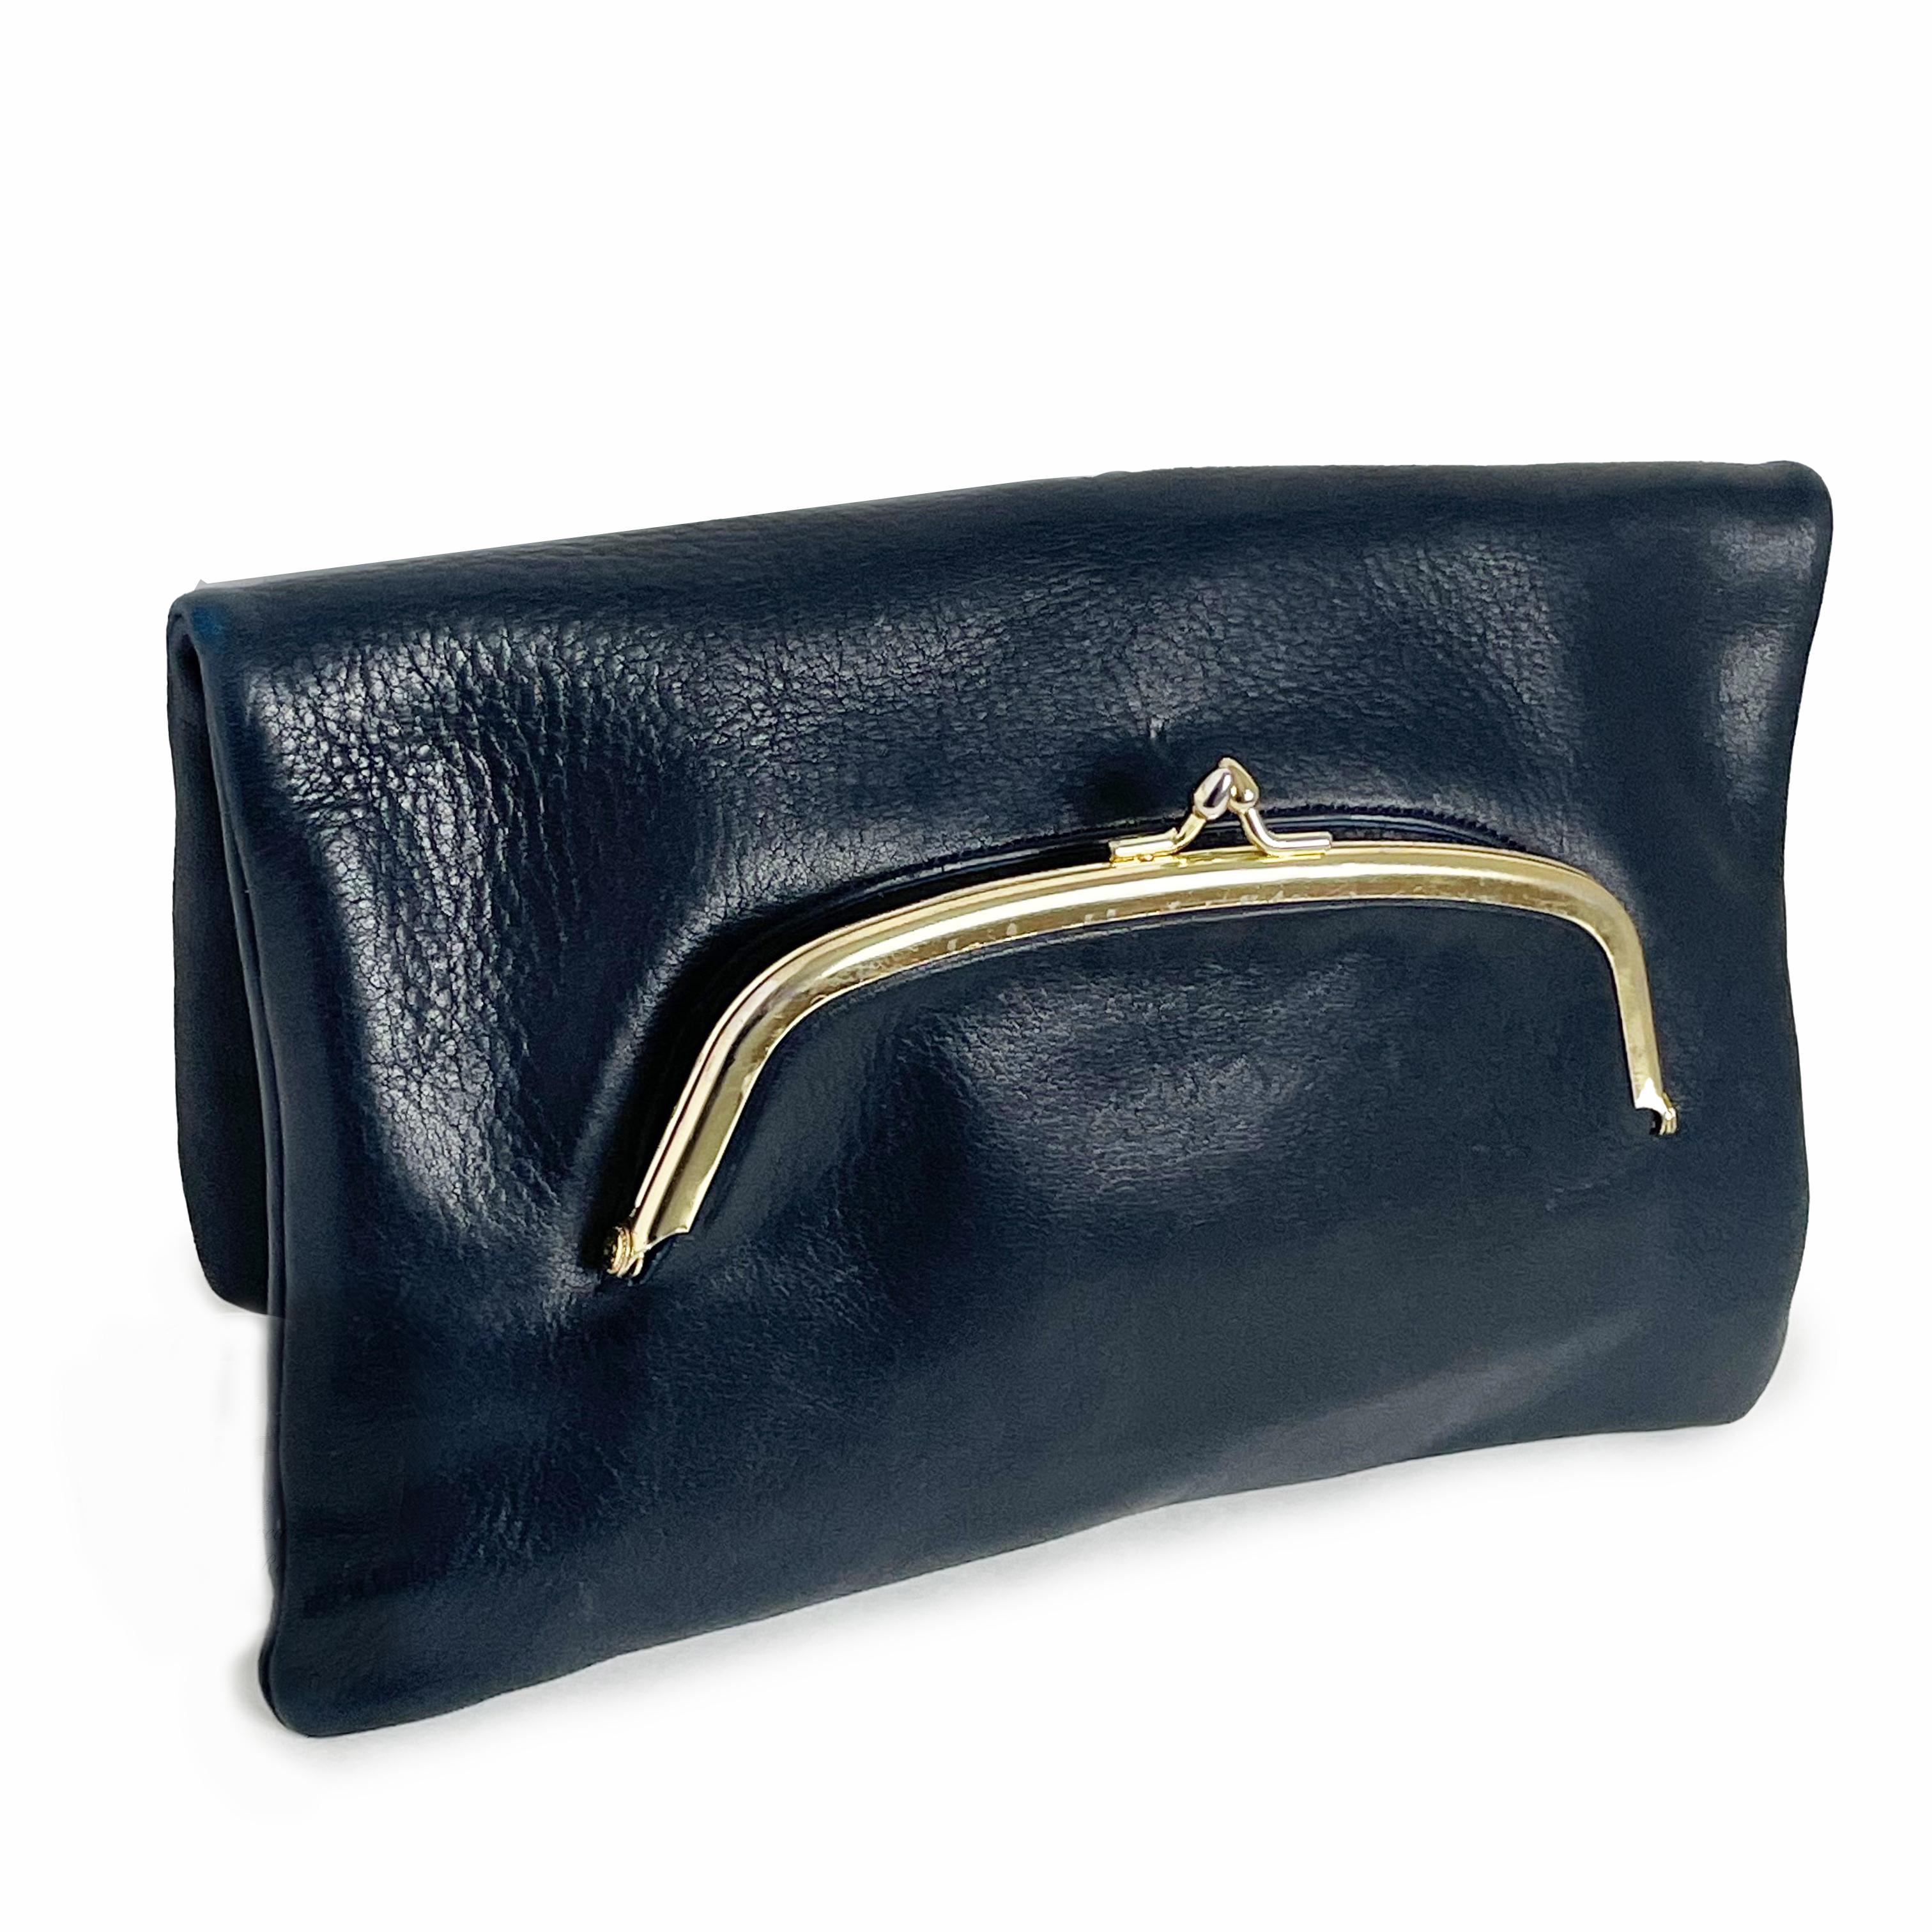 Authentique, d'occasion, sac à main Bonnie Cashin for Coach des années 70 avec fermeture à glissière.  Confectionnée dans un cuir souple bleu texturé, cette pochette rare est de forme carrée et se replie sur elle-même. Elle est dotée d'une petite